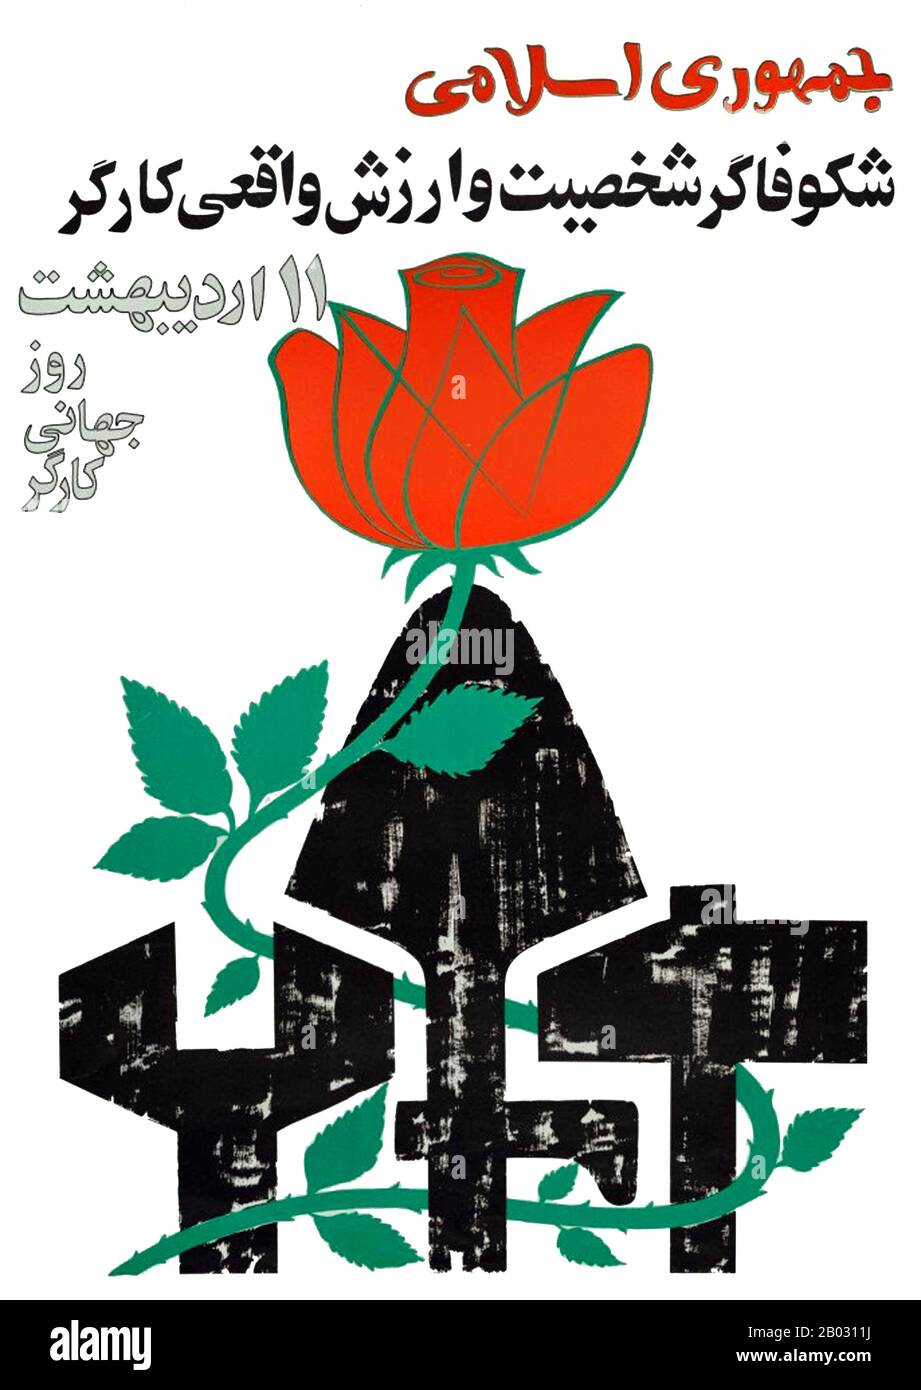 Il partito repubblicano islamico (IRP) è stato l’unico partito politico legale in Iran, formato a metà del 1979 per aiutare la Rivoluzione iraniana e l’Ayatollah Khomeini a stabilire la teocrazia in Iran. È stato sciolto nel maggio 1987 a causa di conflitti interni. Foto Stock